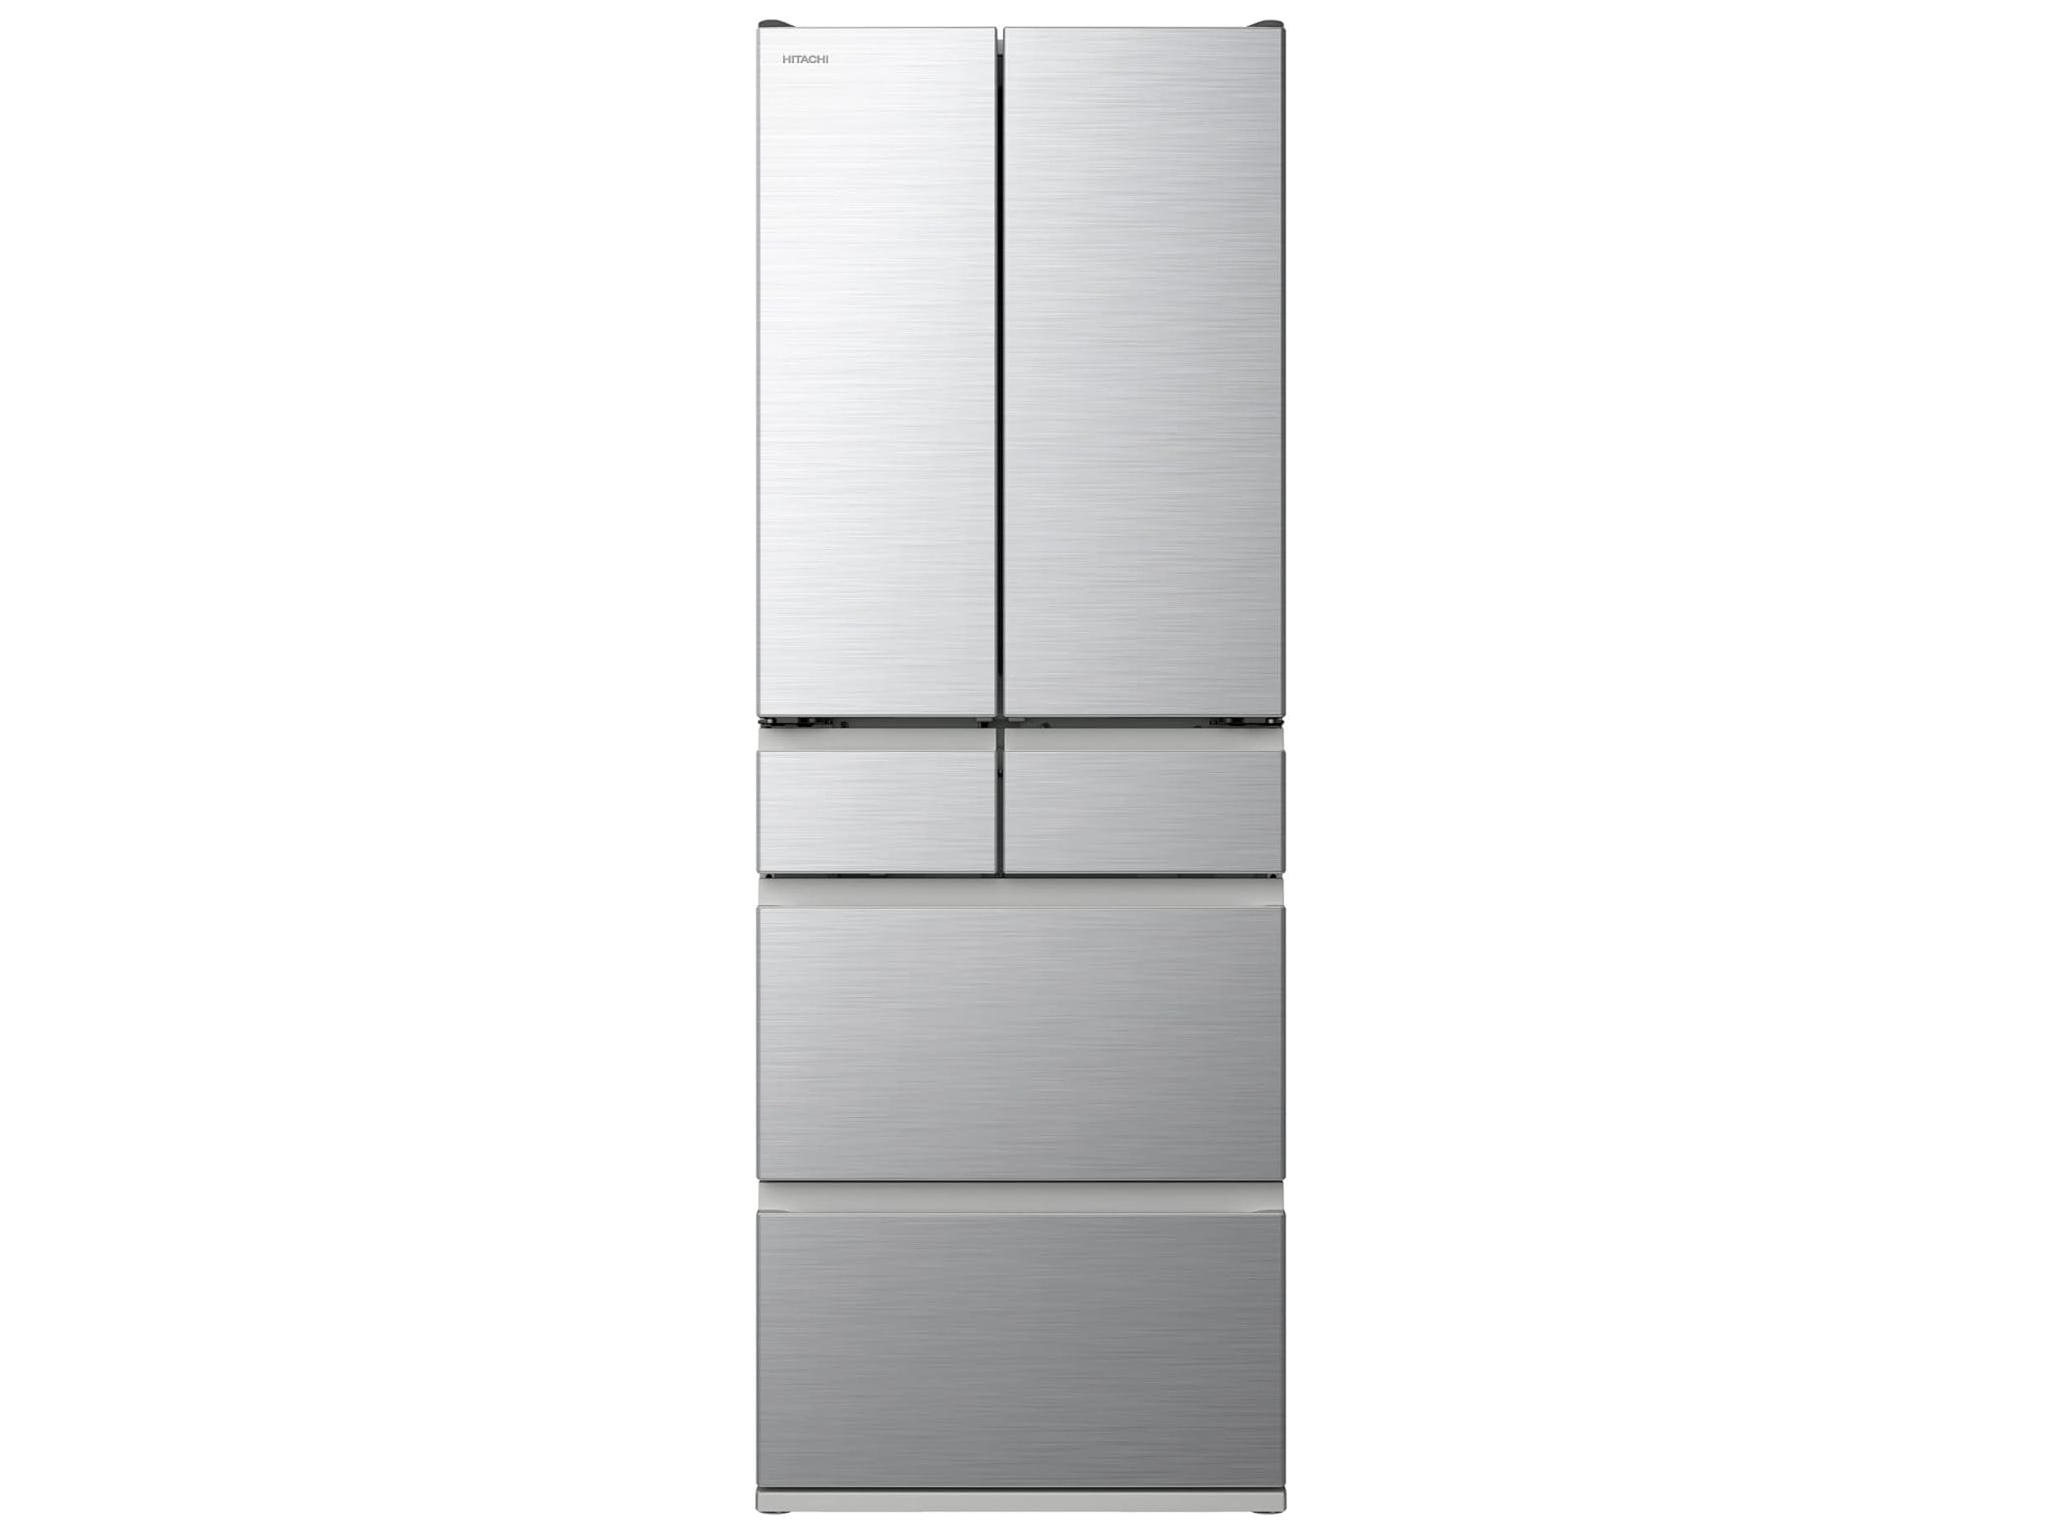 本日みつけたお買い得品】容量551Lの東芝製6ドア冷蔵庫が約2万6千円 